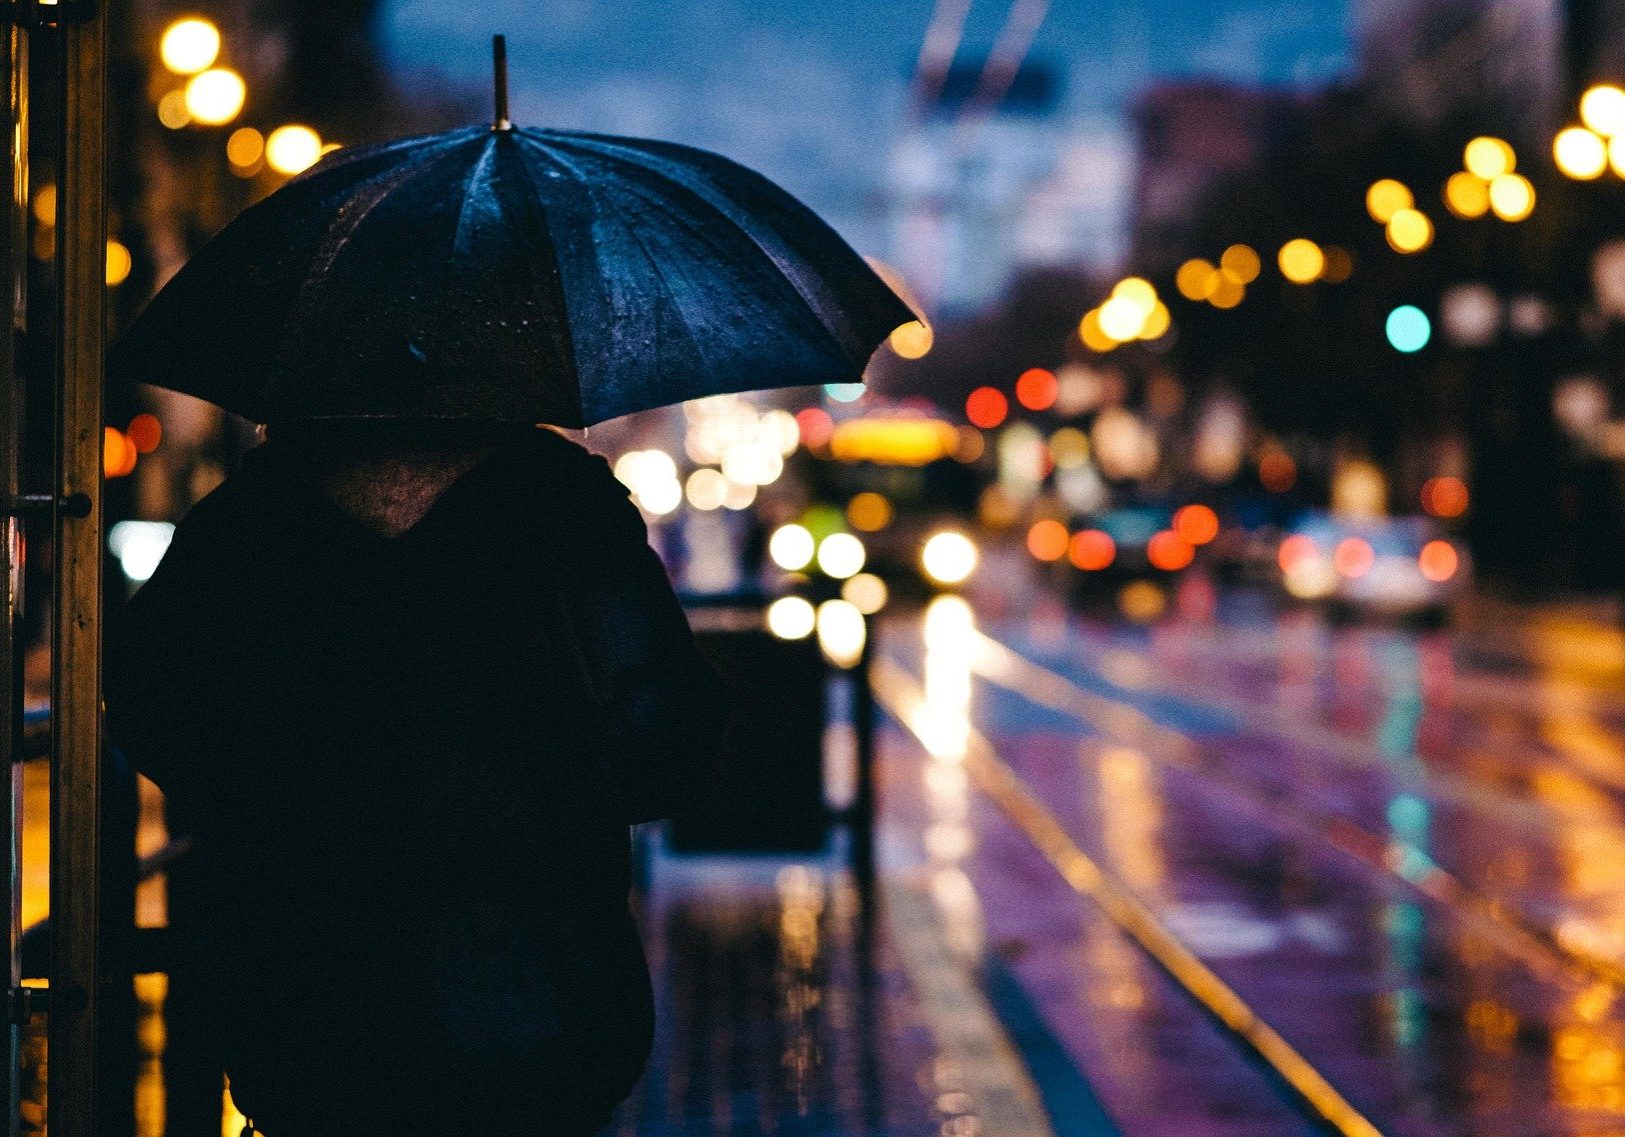 person holding umbrella in rain